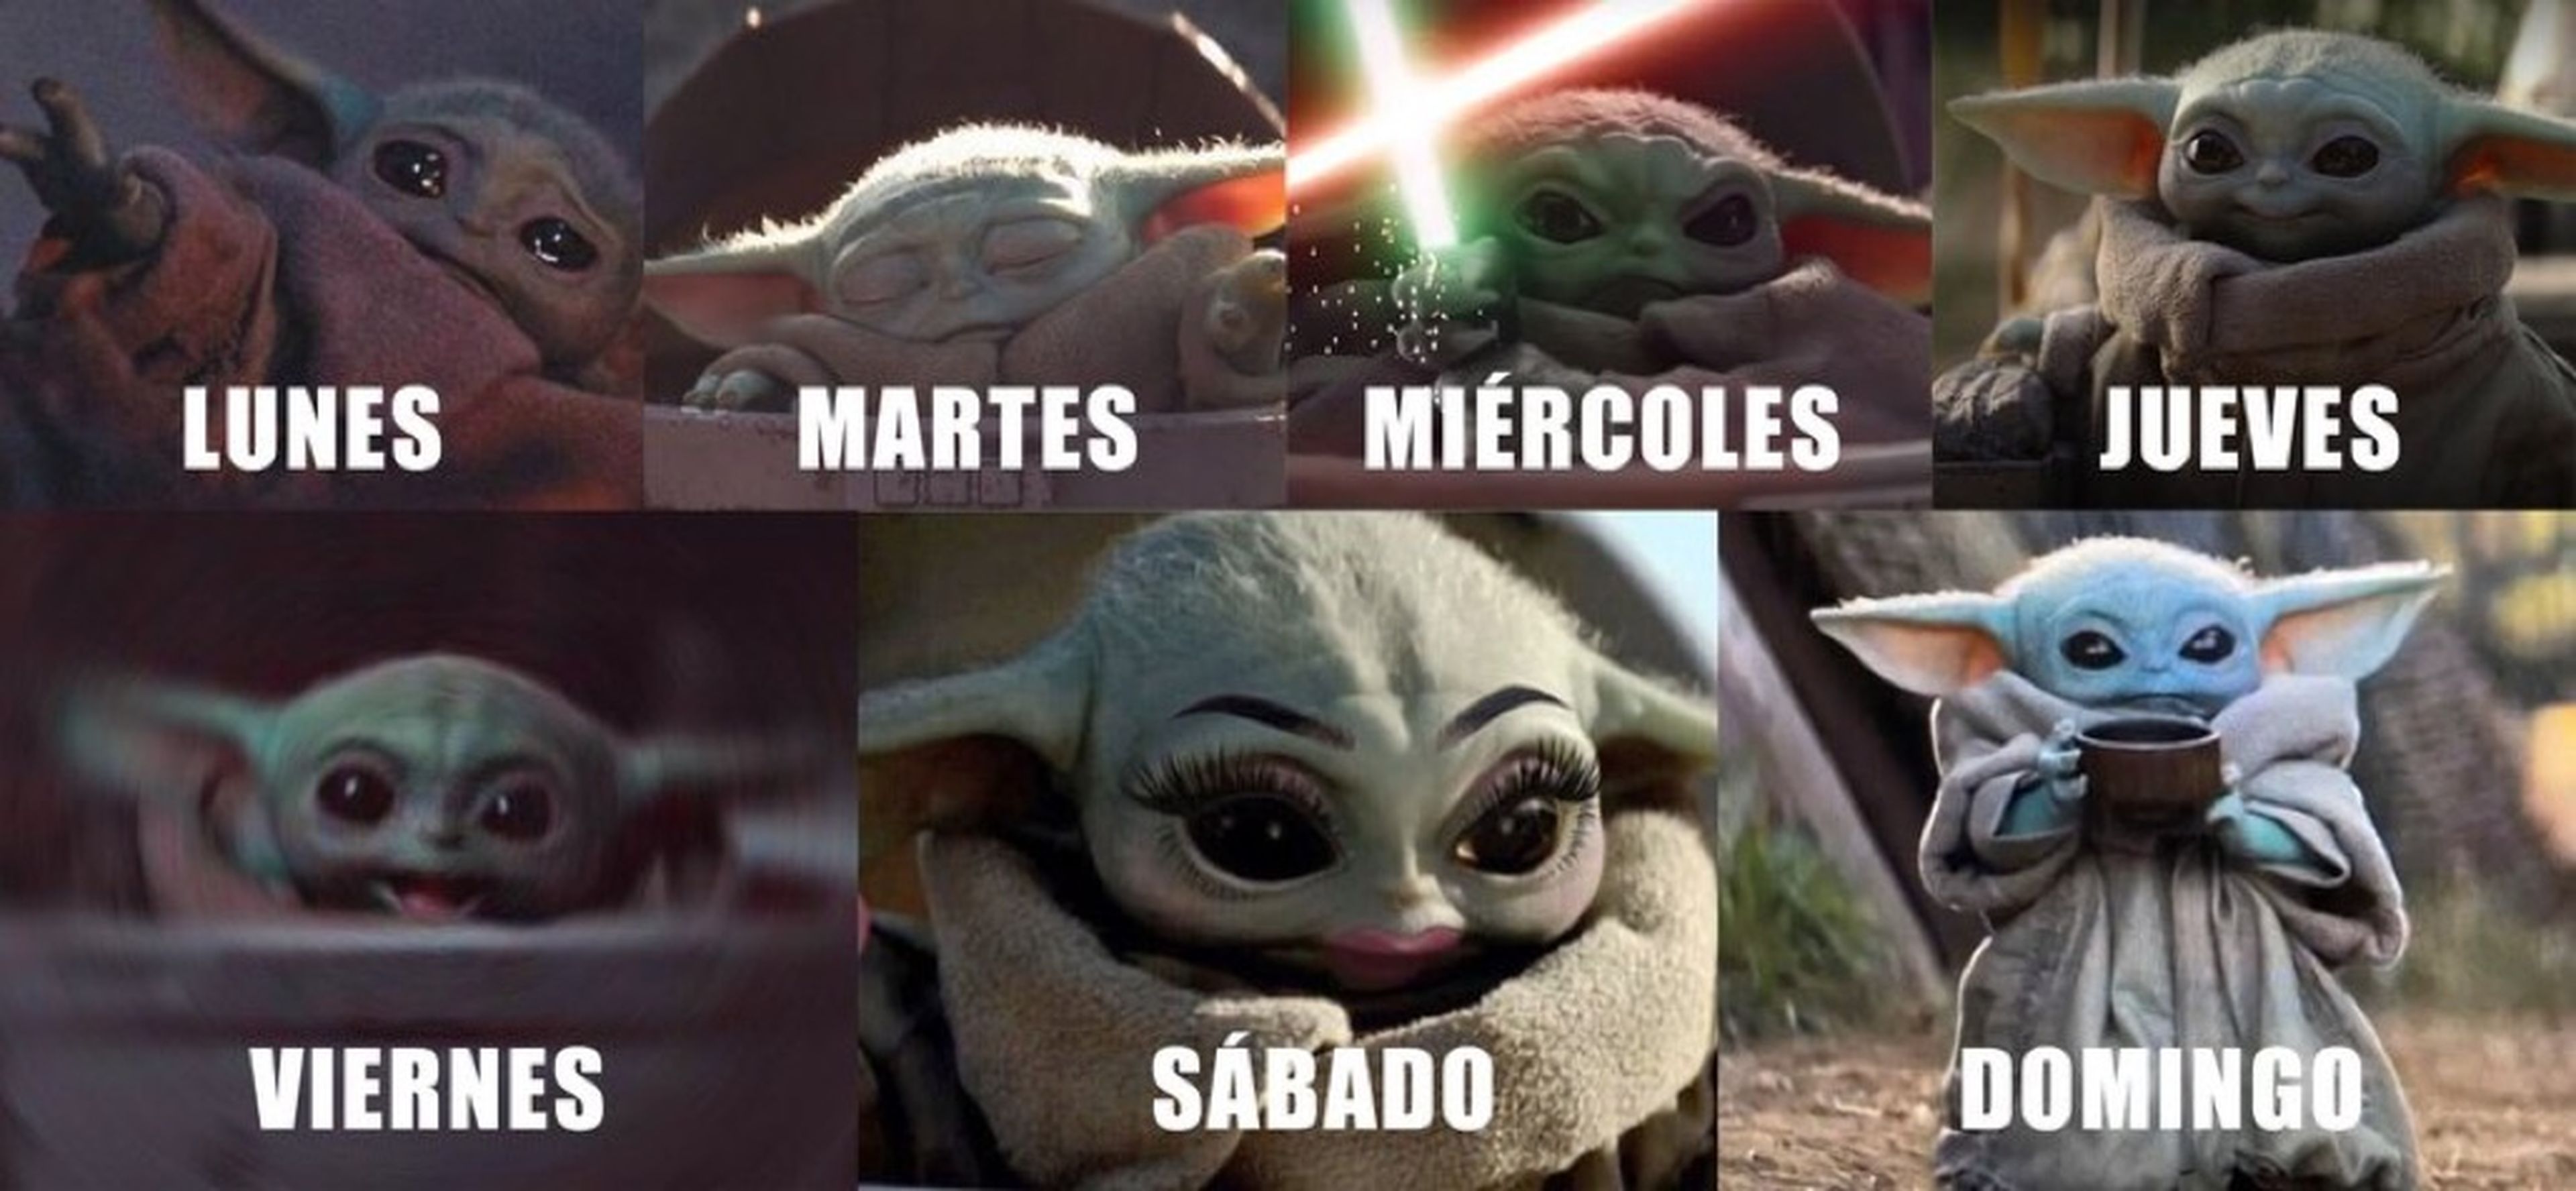 Memes de Baby Yoda